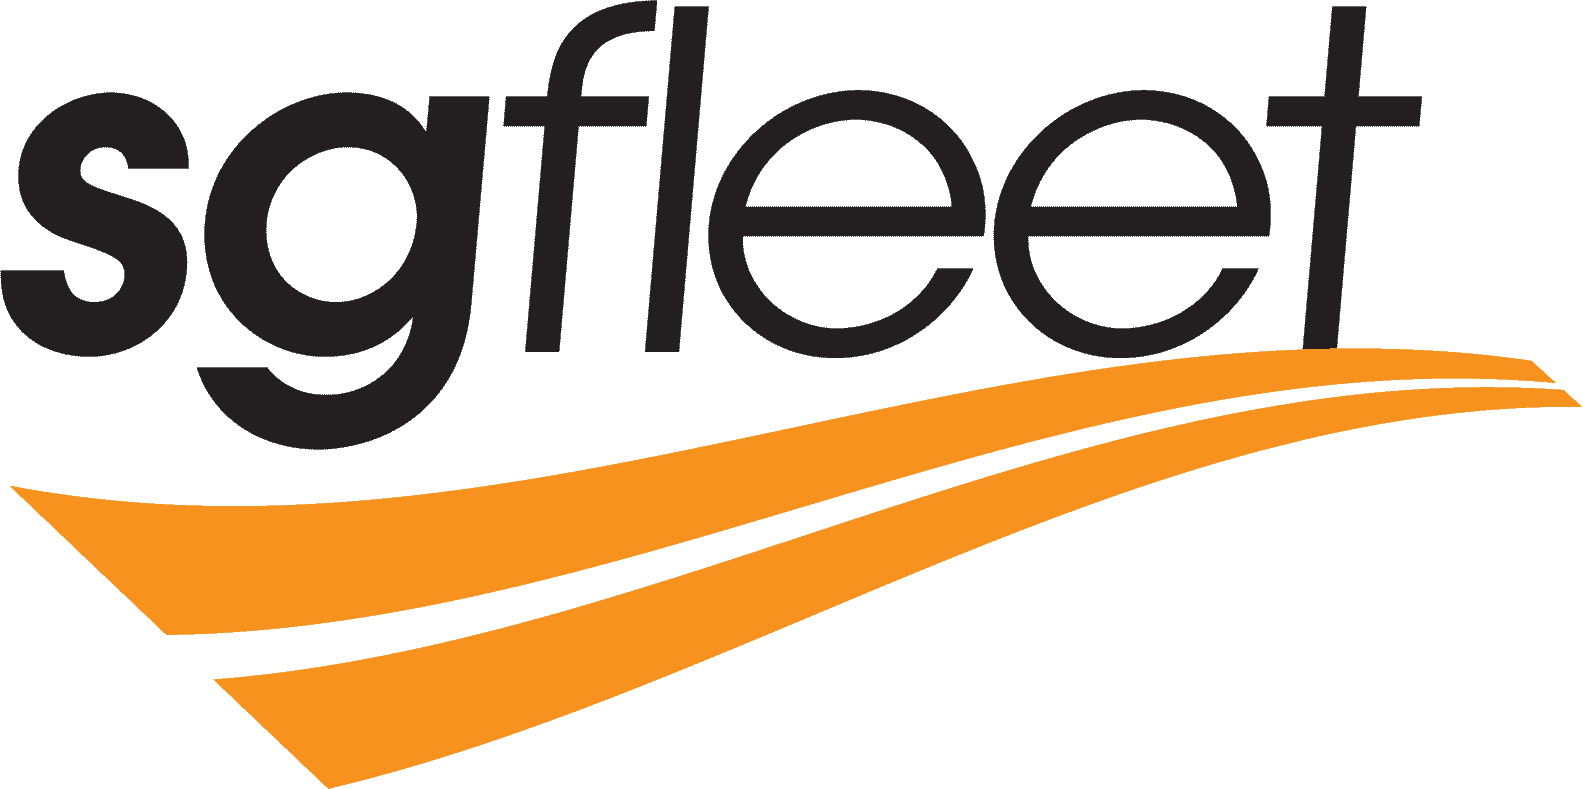 sgfleet logo rgb